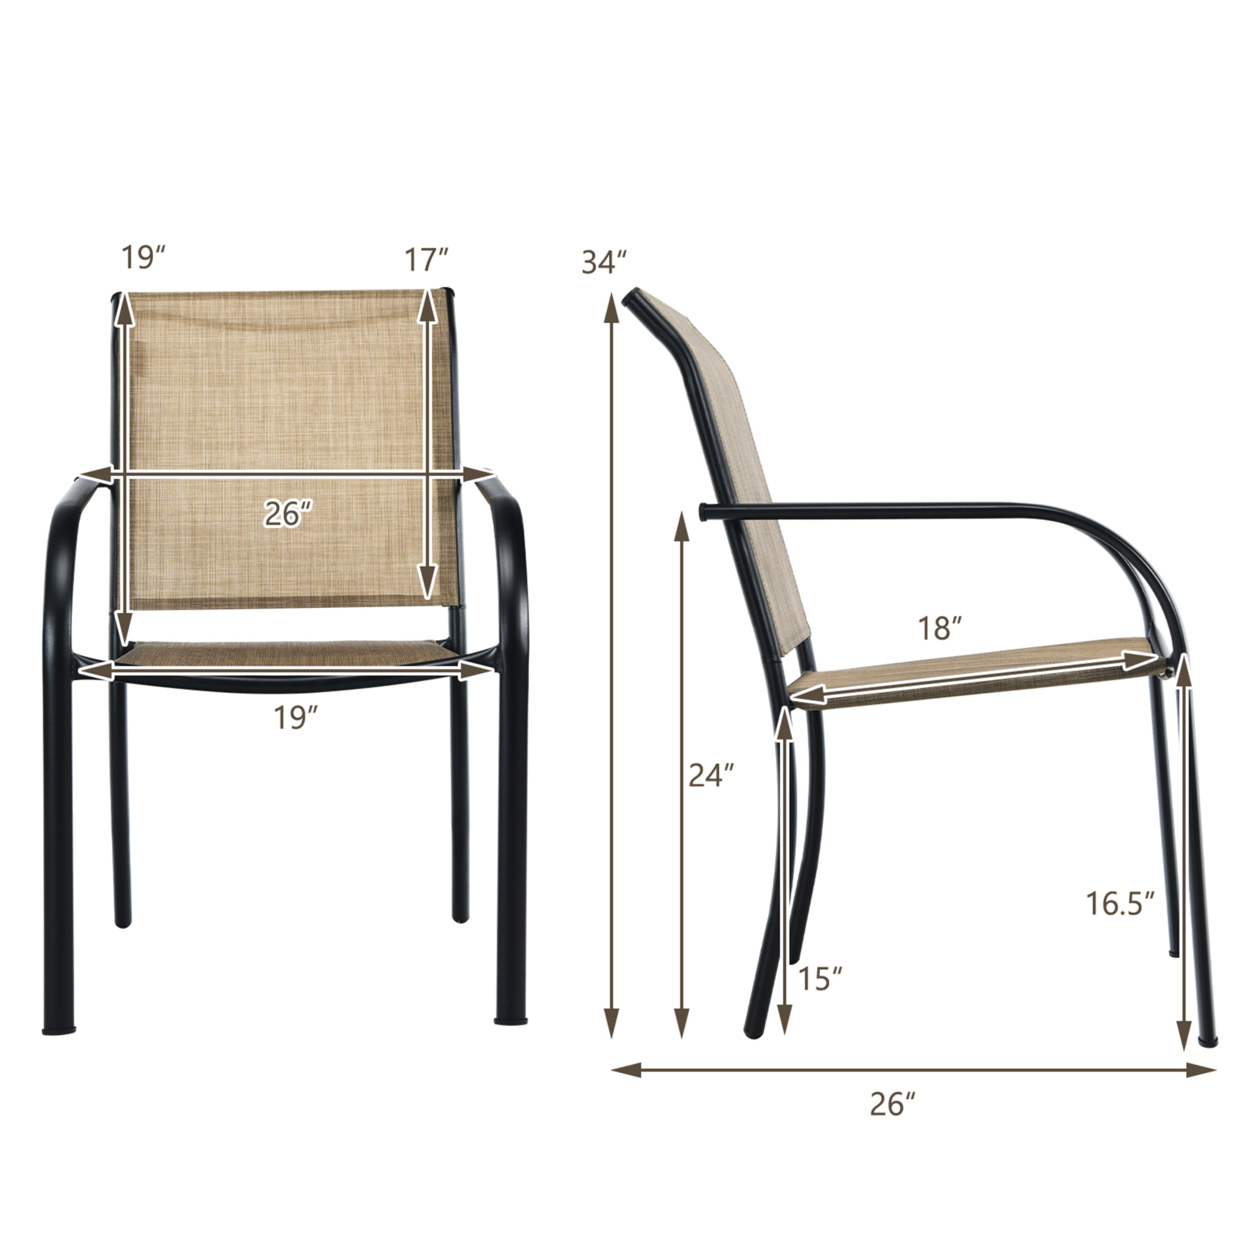 Gymax Patio Dining Chair Outdoor Stackable Armchair Backyard Garden - 8 Pcs